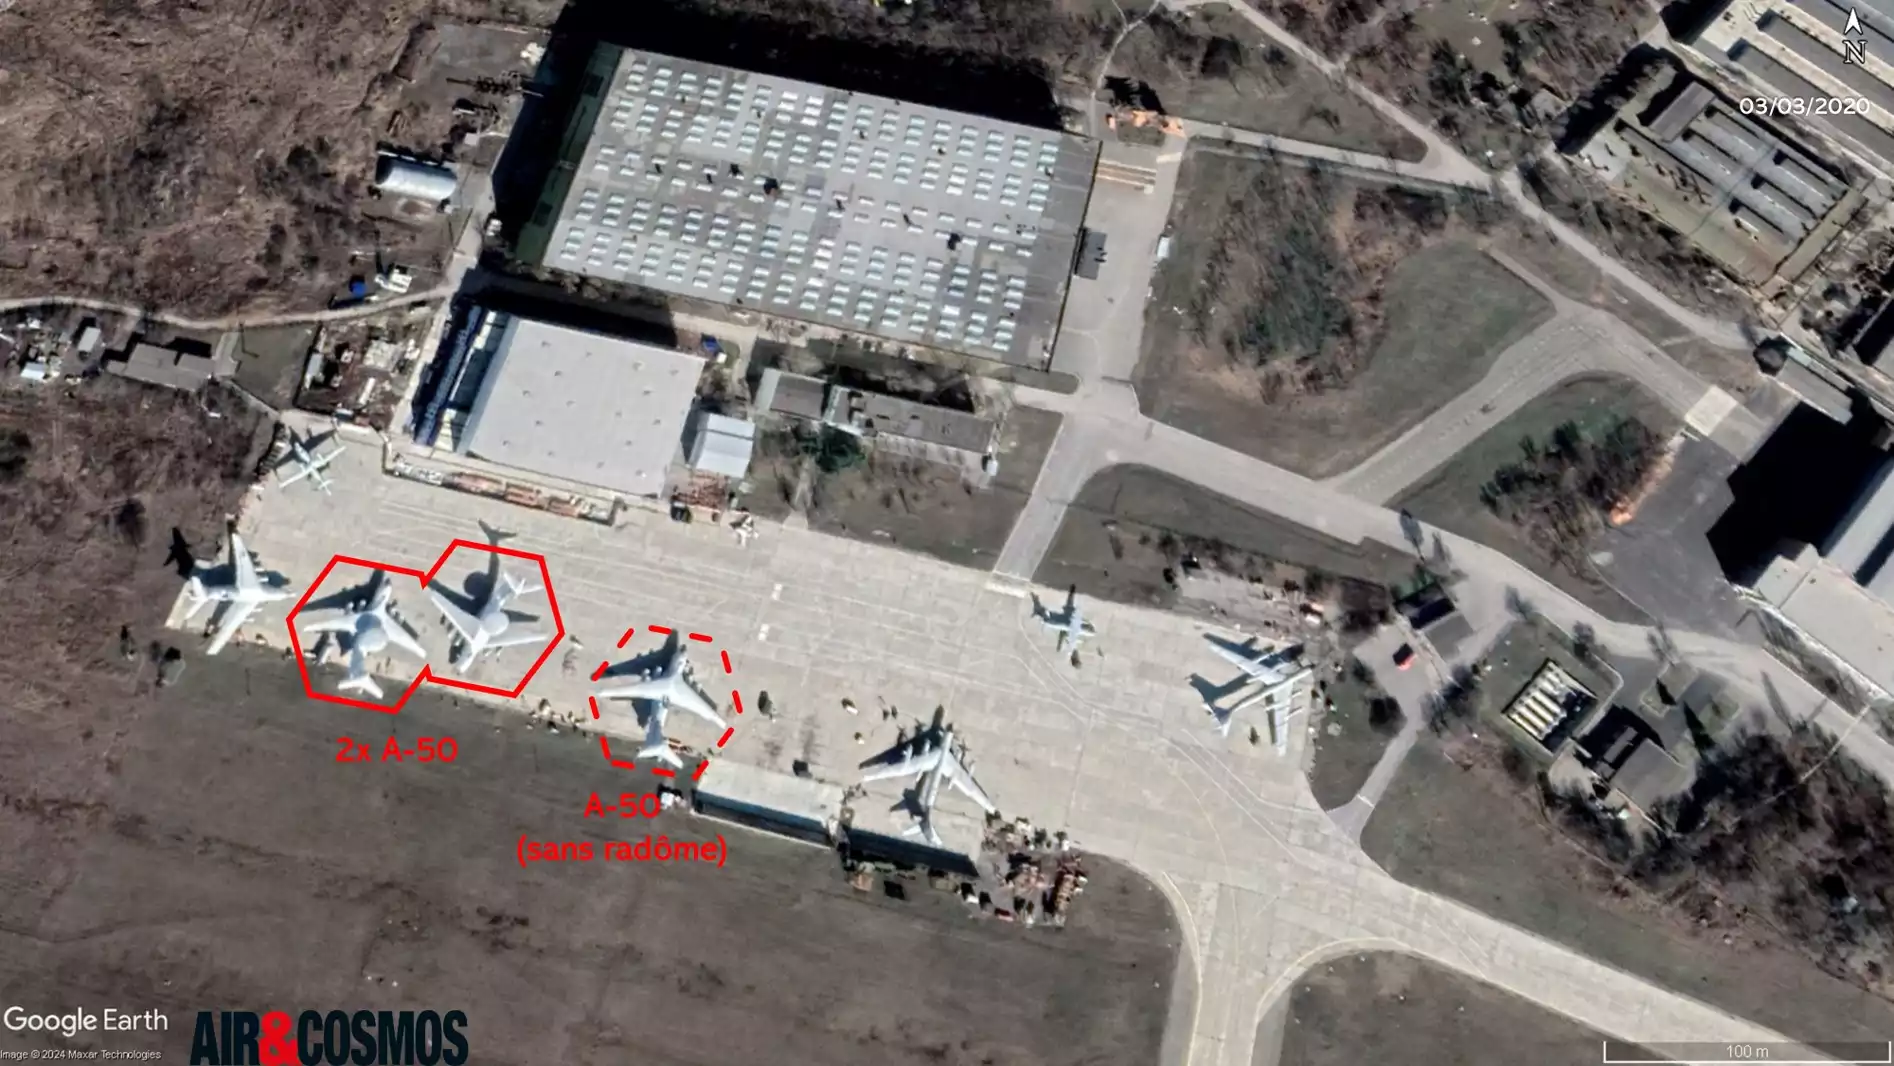 3 mars 2020, deux A-50 ainsi qu'un A-50 sans radôme devant les installations de Beriev (Taganrog).